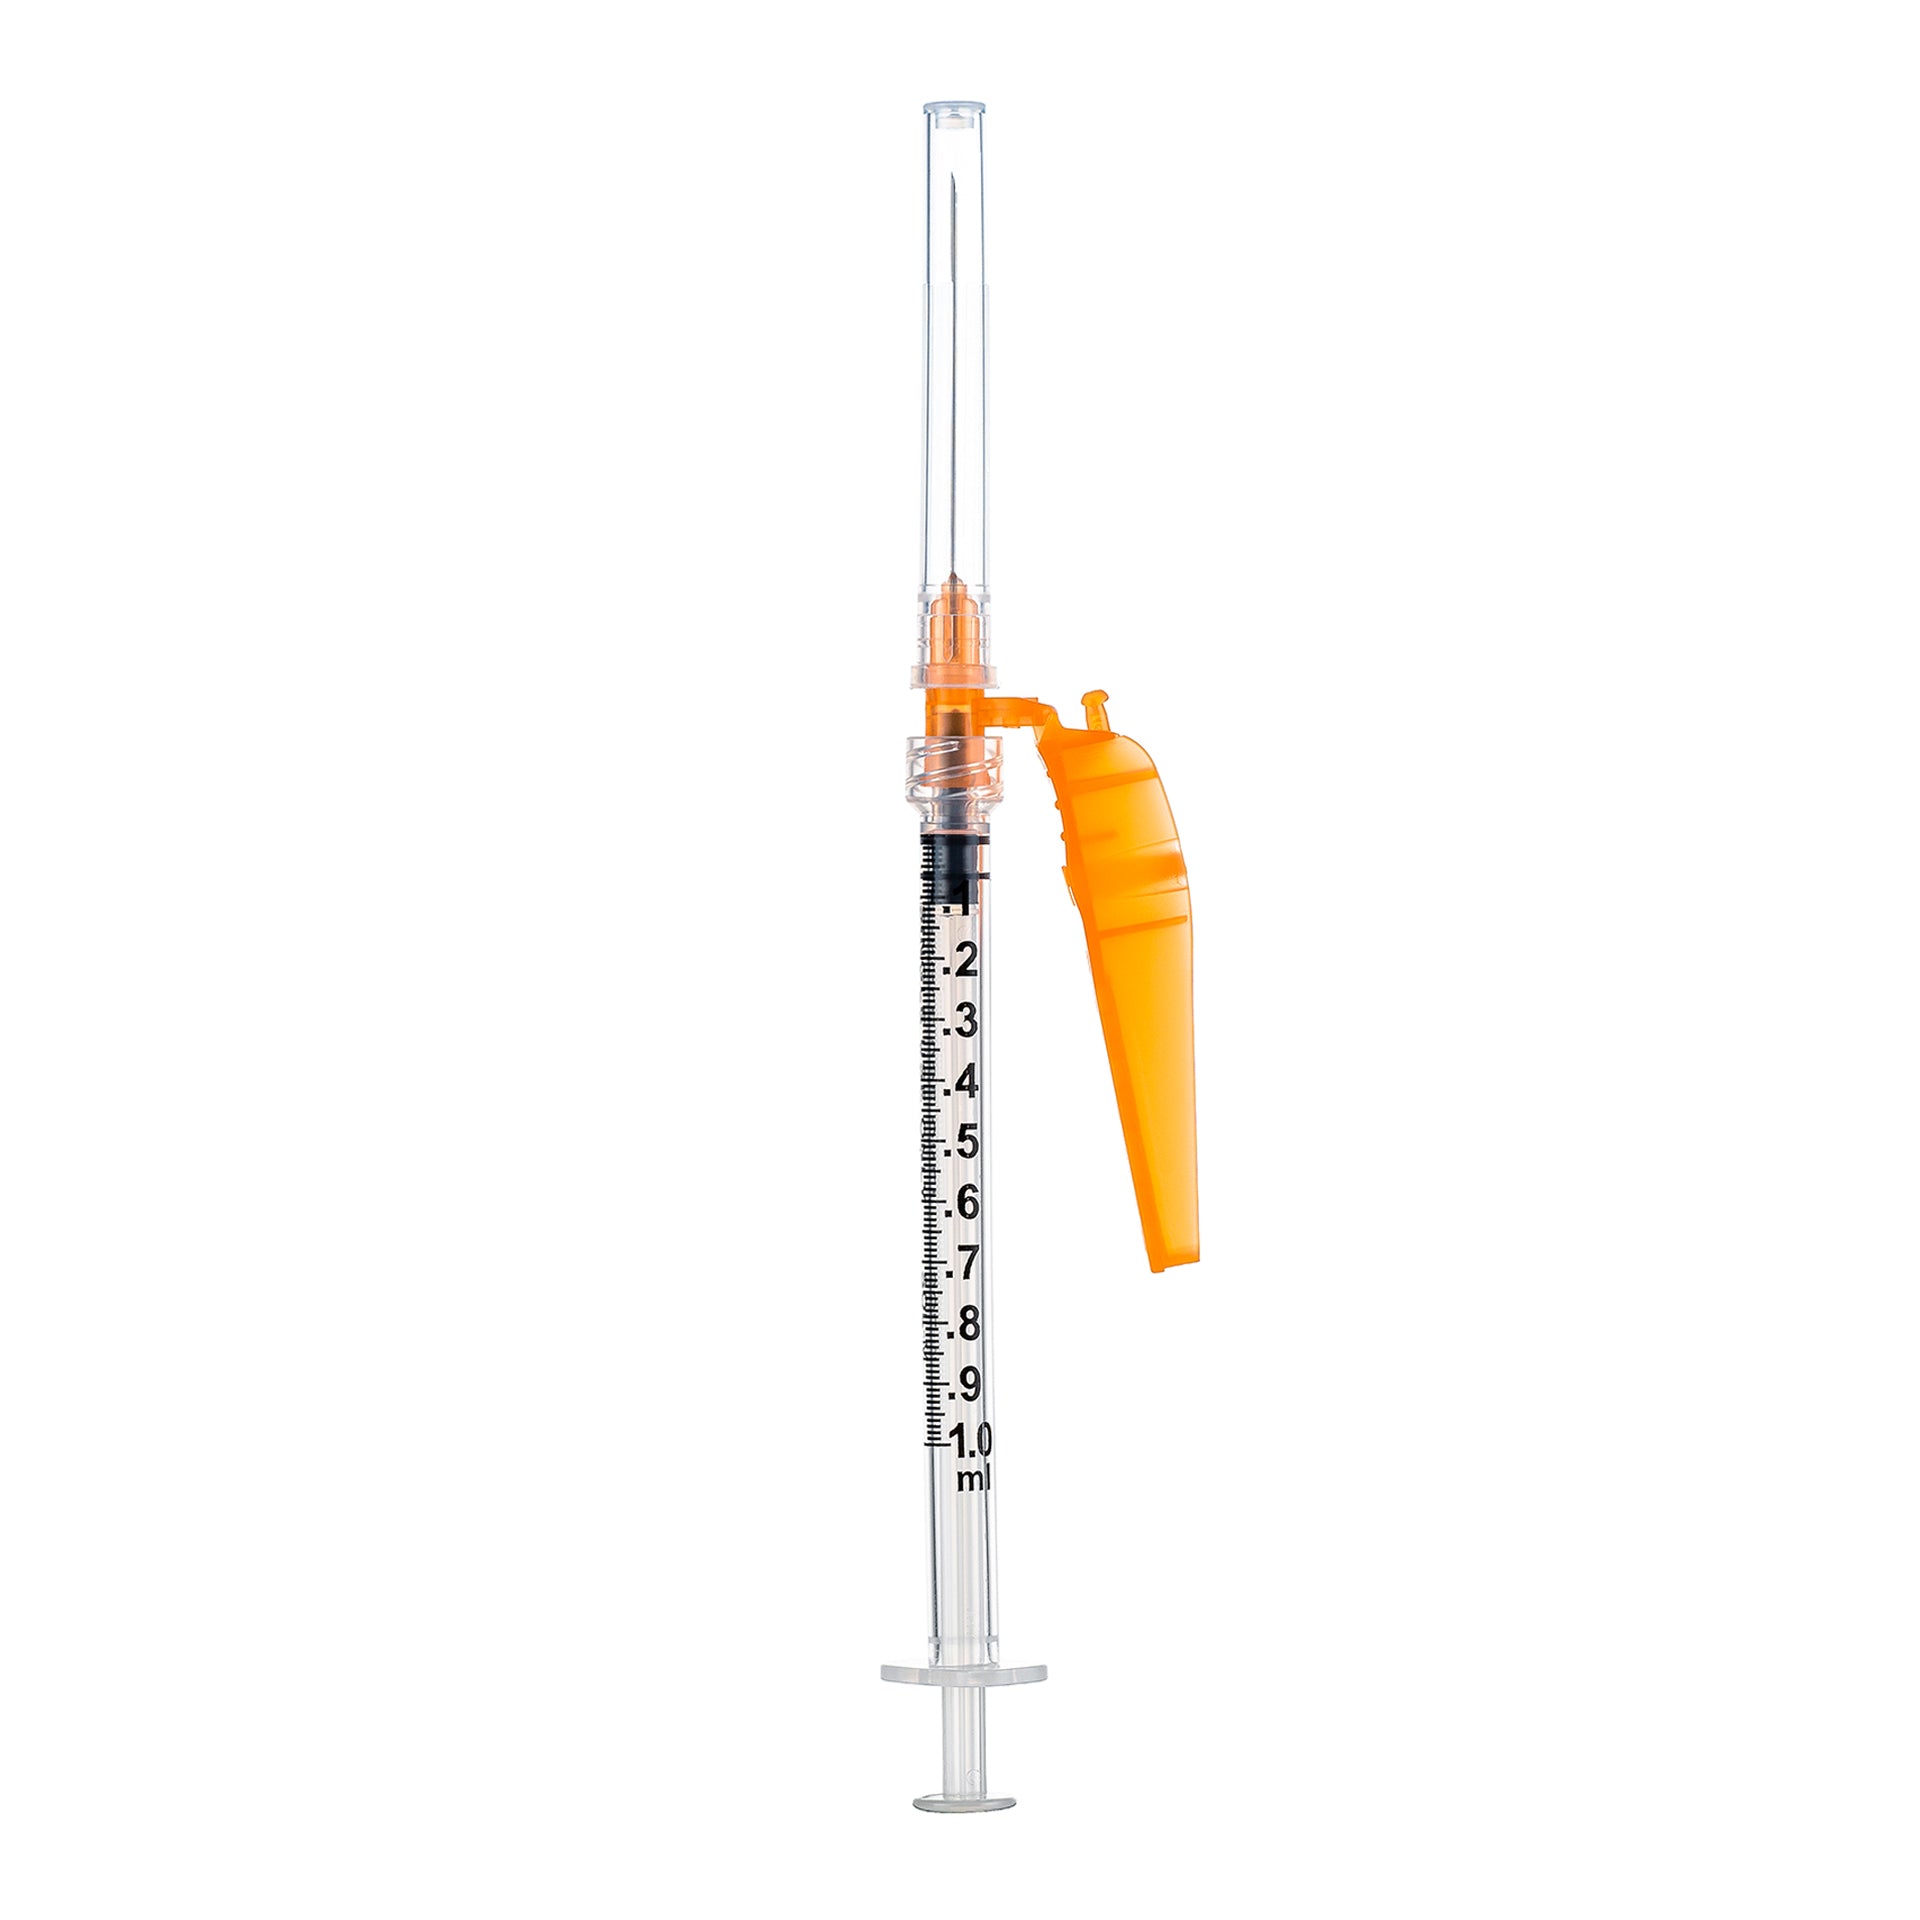 BX/50 - SOL-CARE 3ml Luer Lock Syringe w/Safety Needle 25G*5/8 (needle aside)